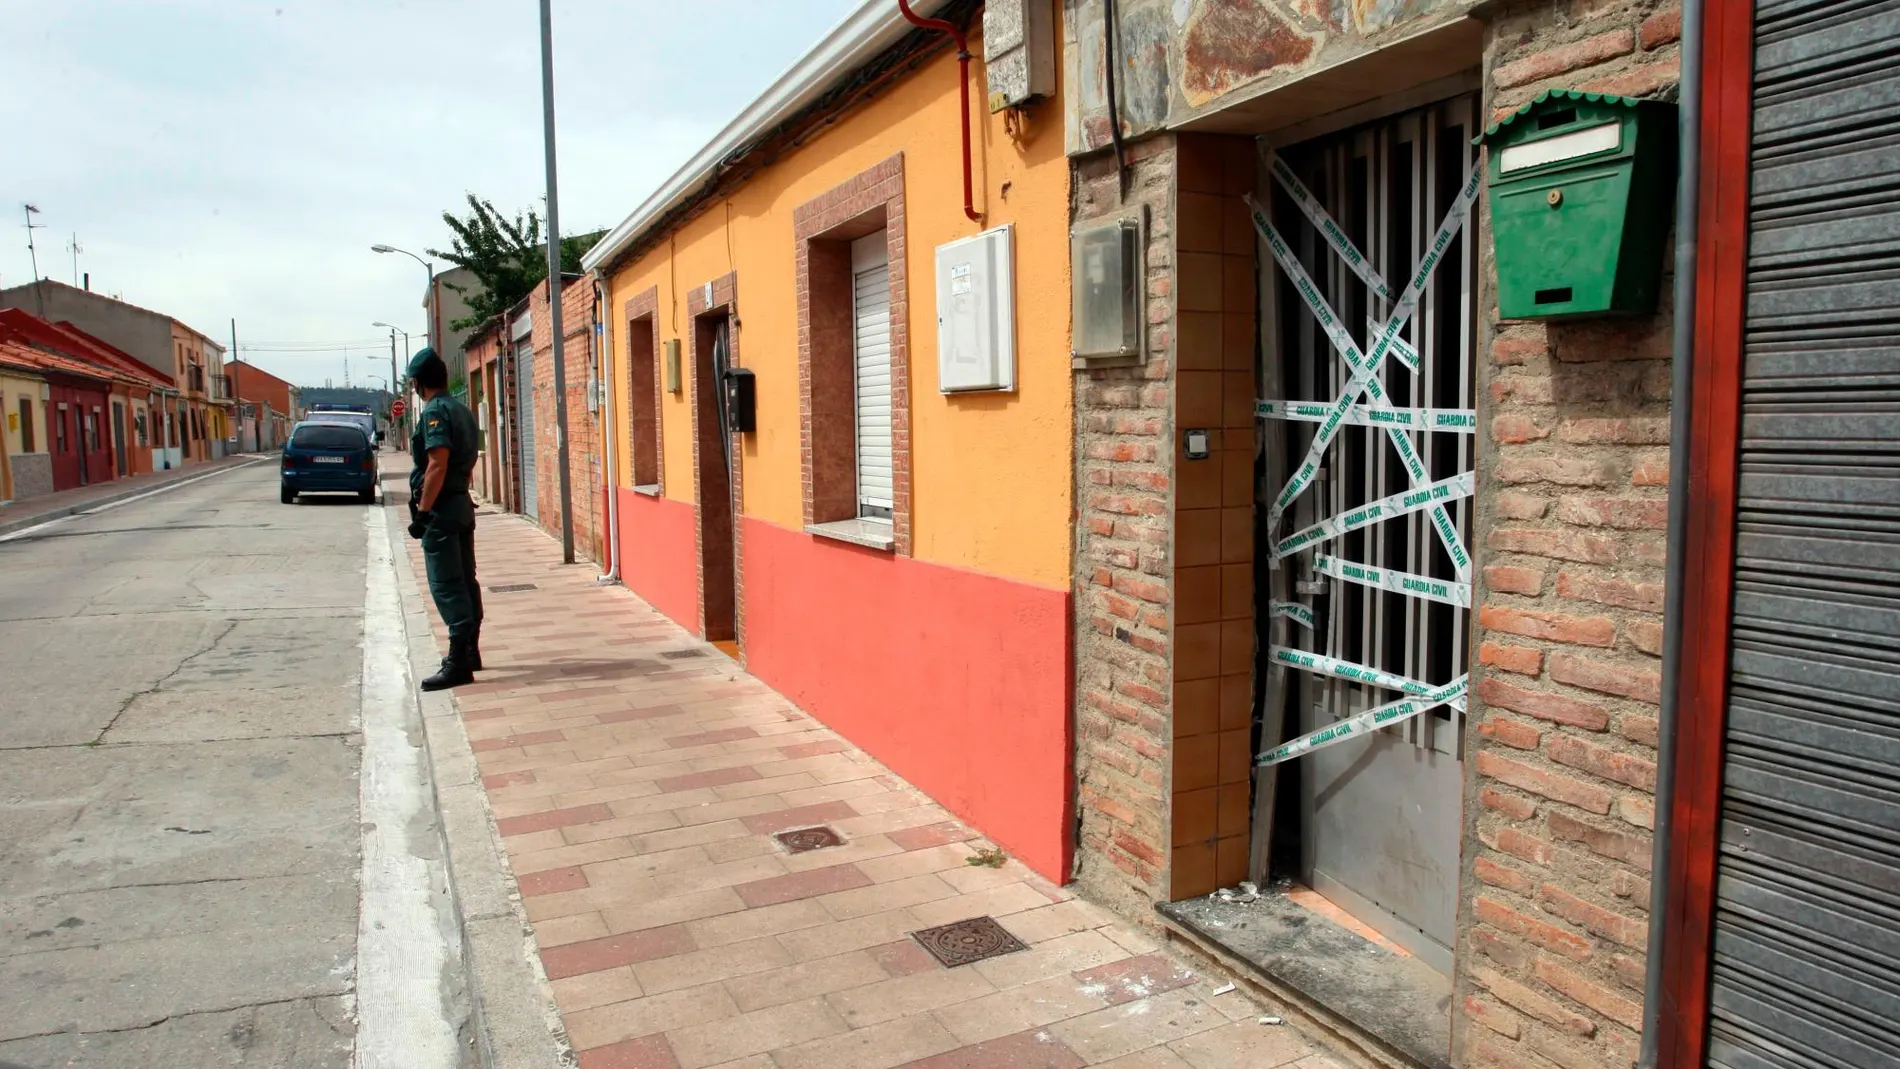 Calle del barrio vallisoletano de Las Flores donde se produjo la detención